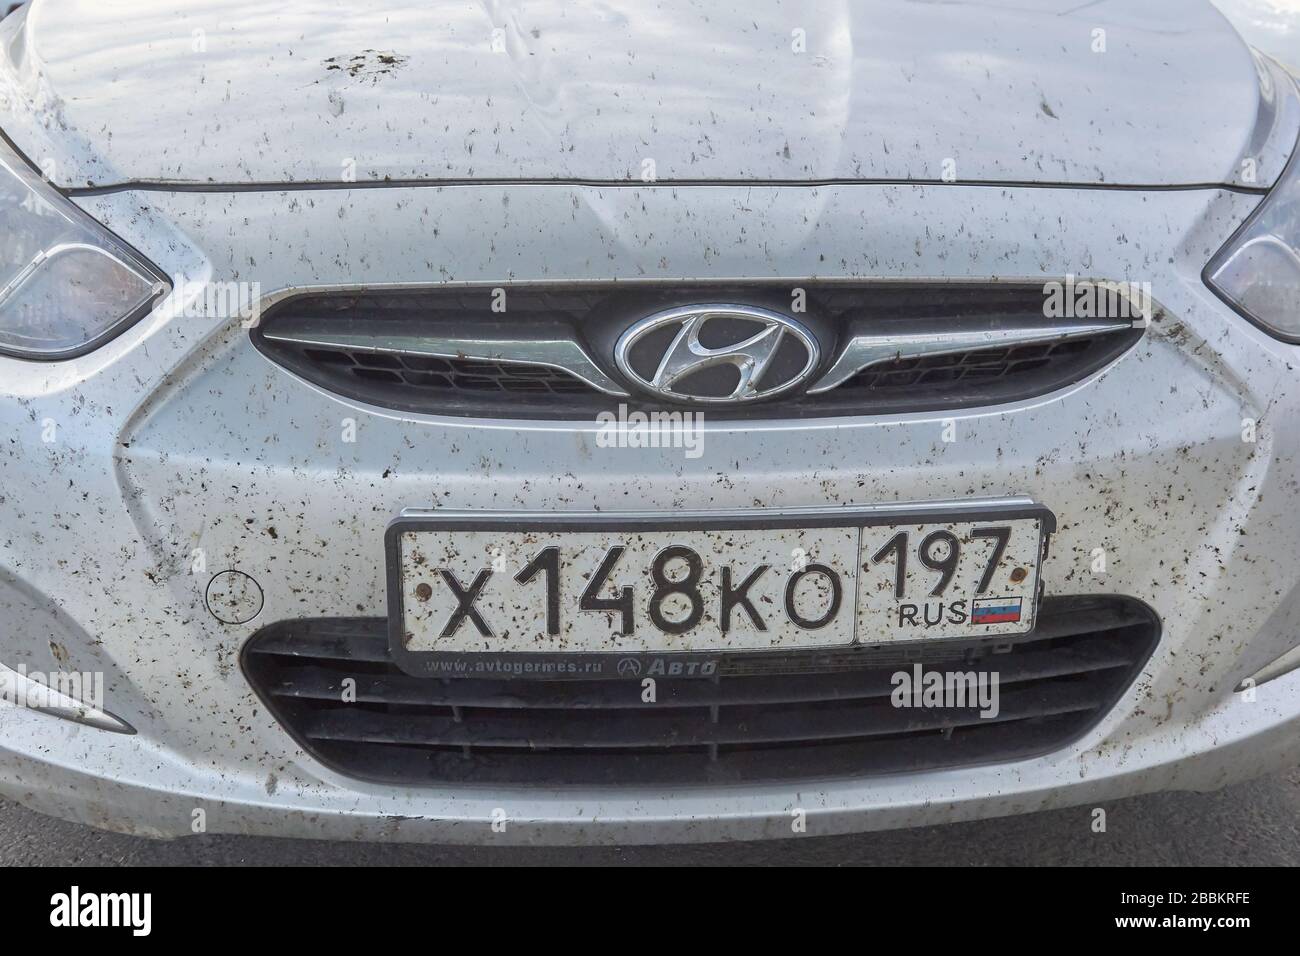 Sankt Petersburg, RUSSLAND - 11. Juli 2019: Mischt Insekten an Stoßstange und Haube des Wagens. Stockfoto